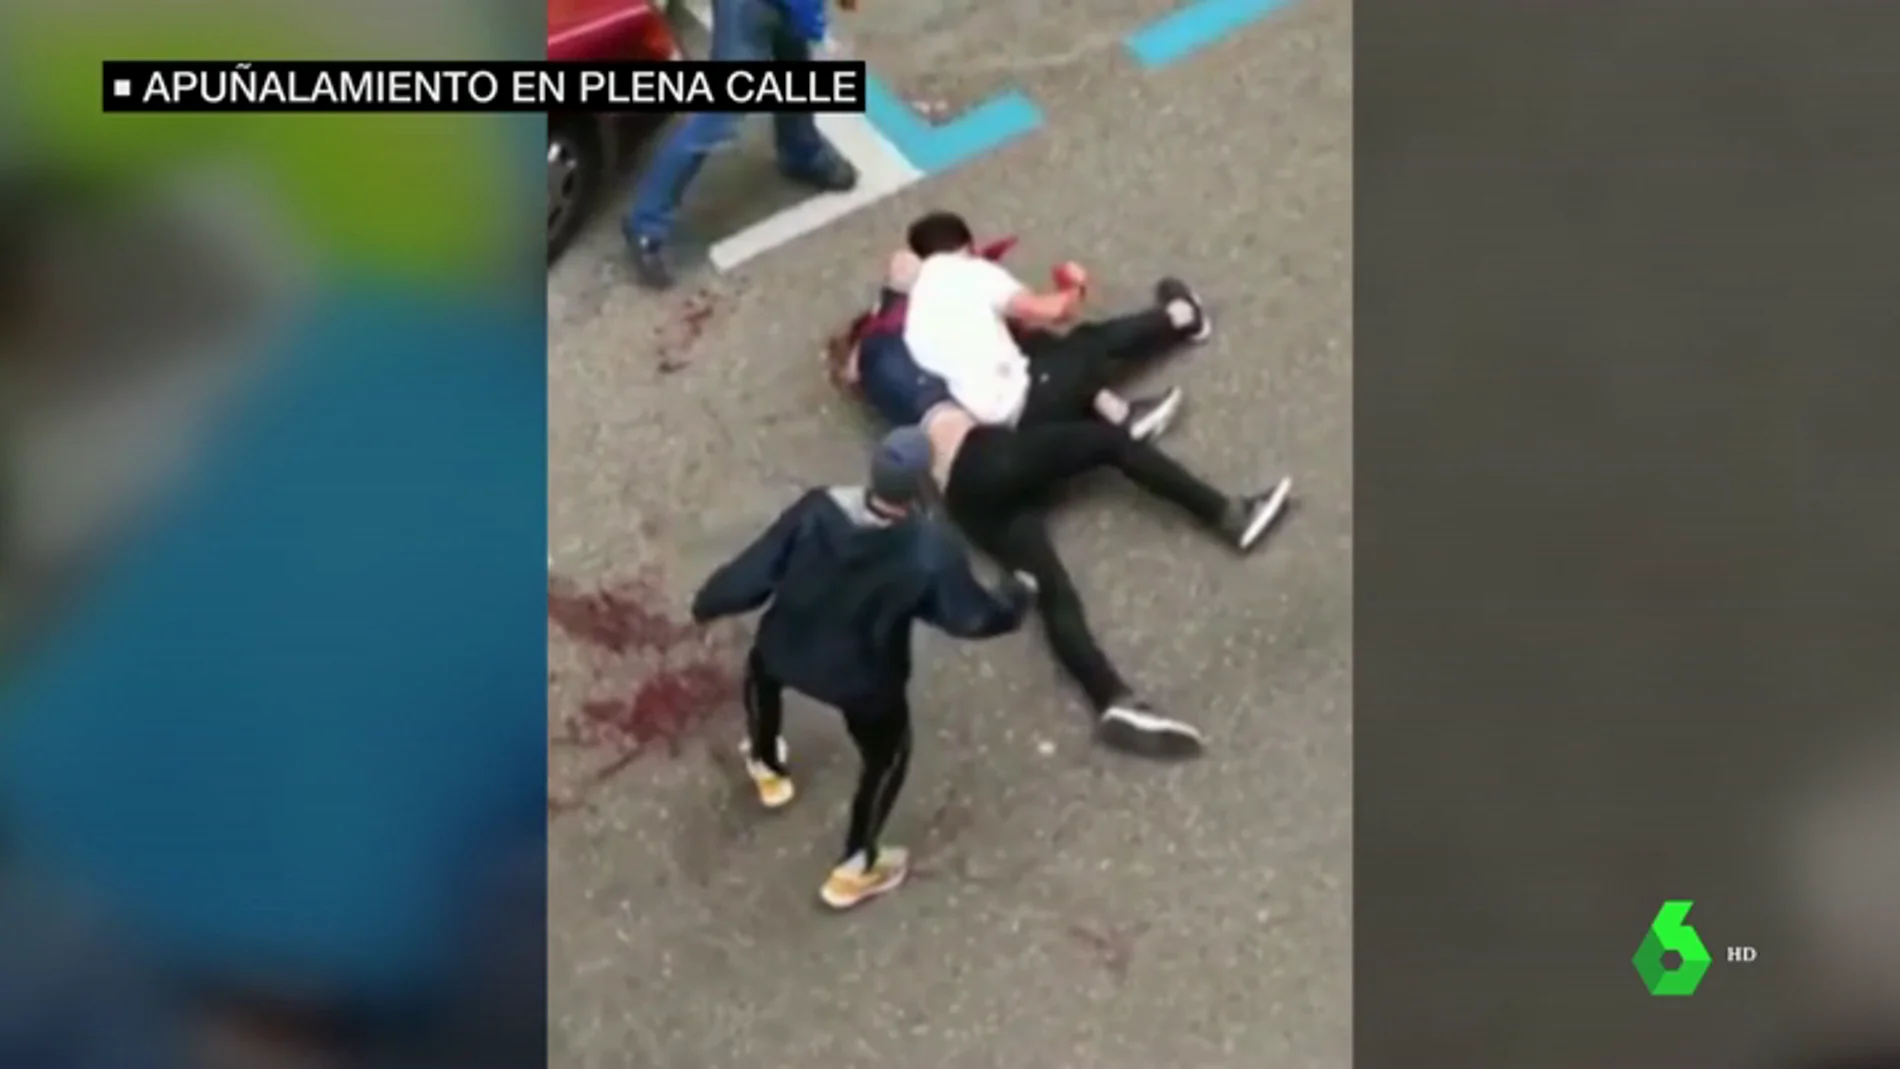 La brutal agresión a puñaladas de Zaragoza se originó por una pelea en el interior de un 'after'